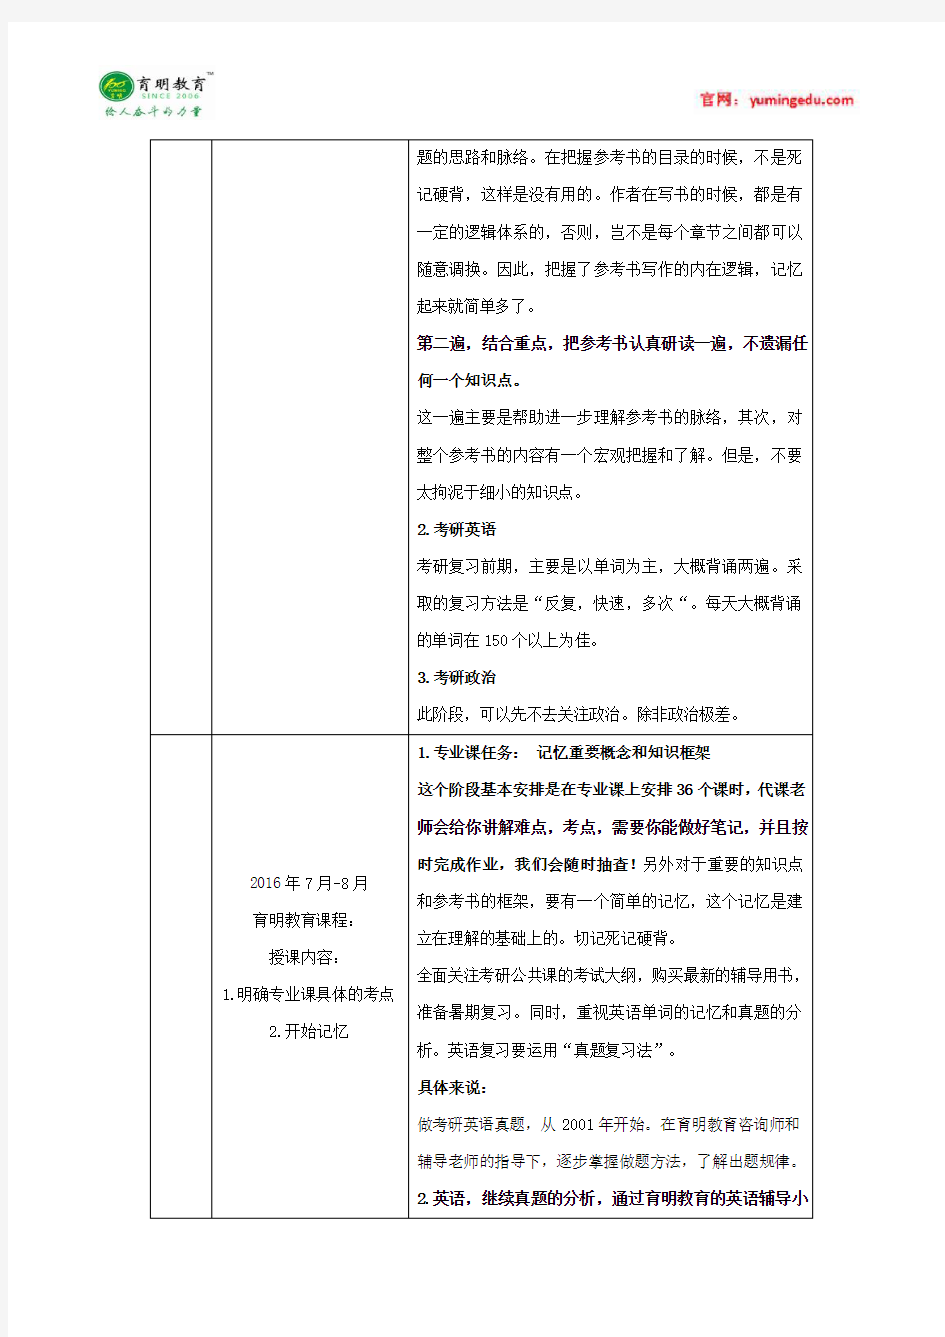 天津美术学院 2015年综合绘画系考研录取名单,考研参考书,考研真题